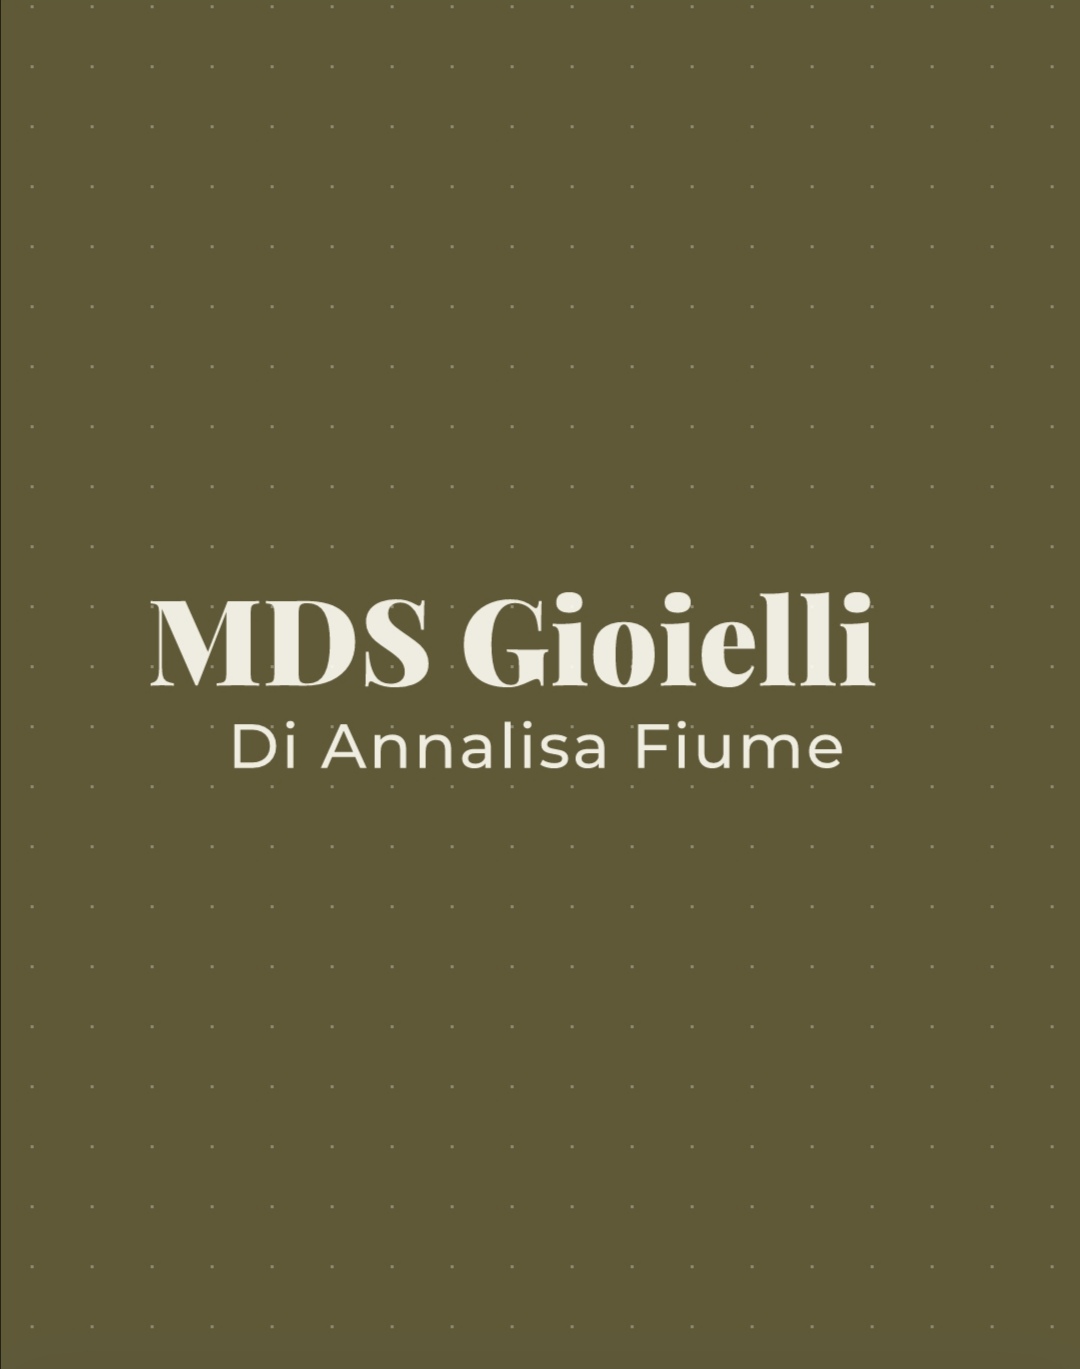 logo mds - Mds Gioielli di Fiume Annalisa - Oromare